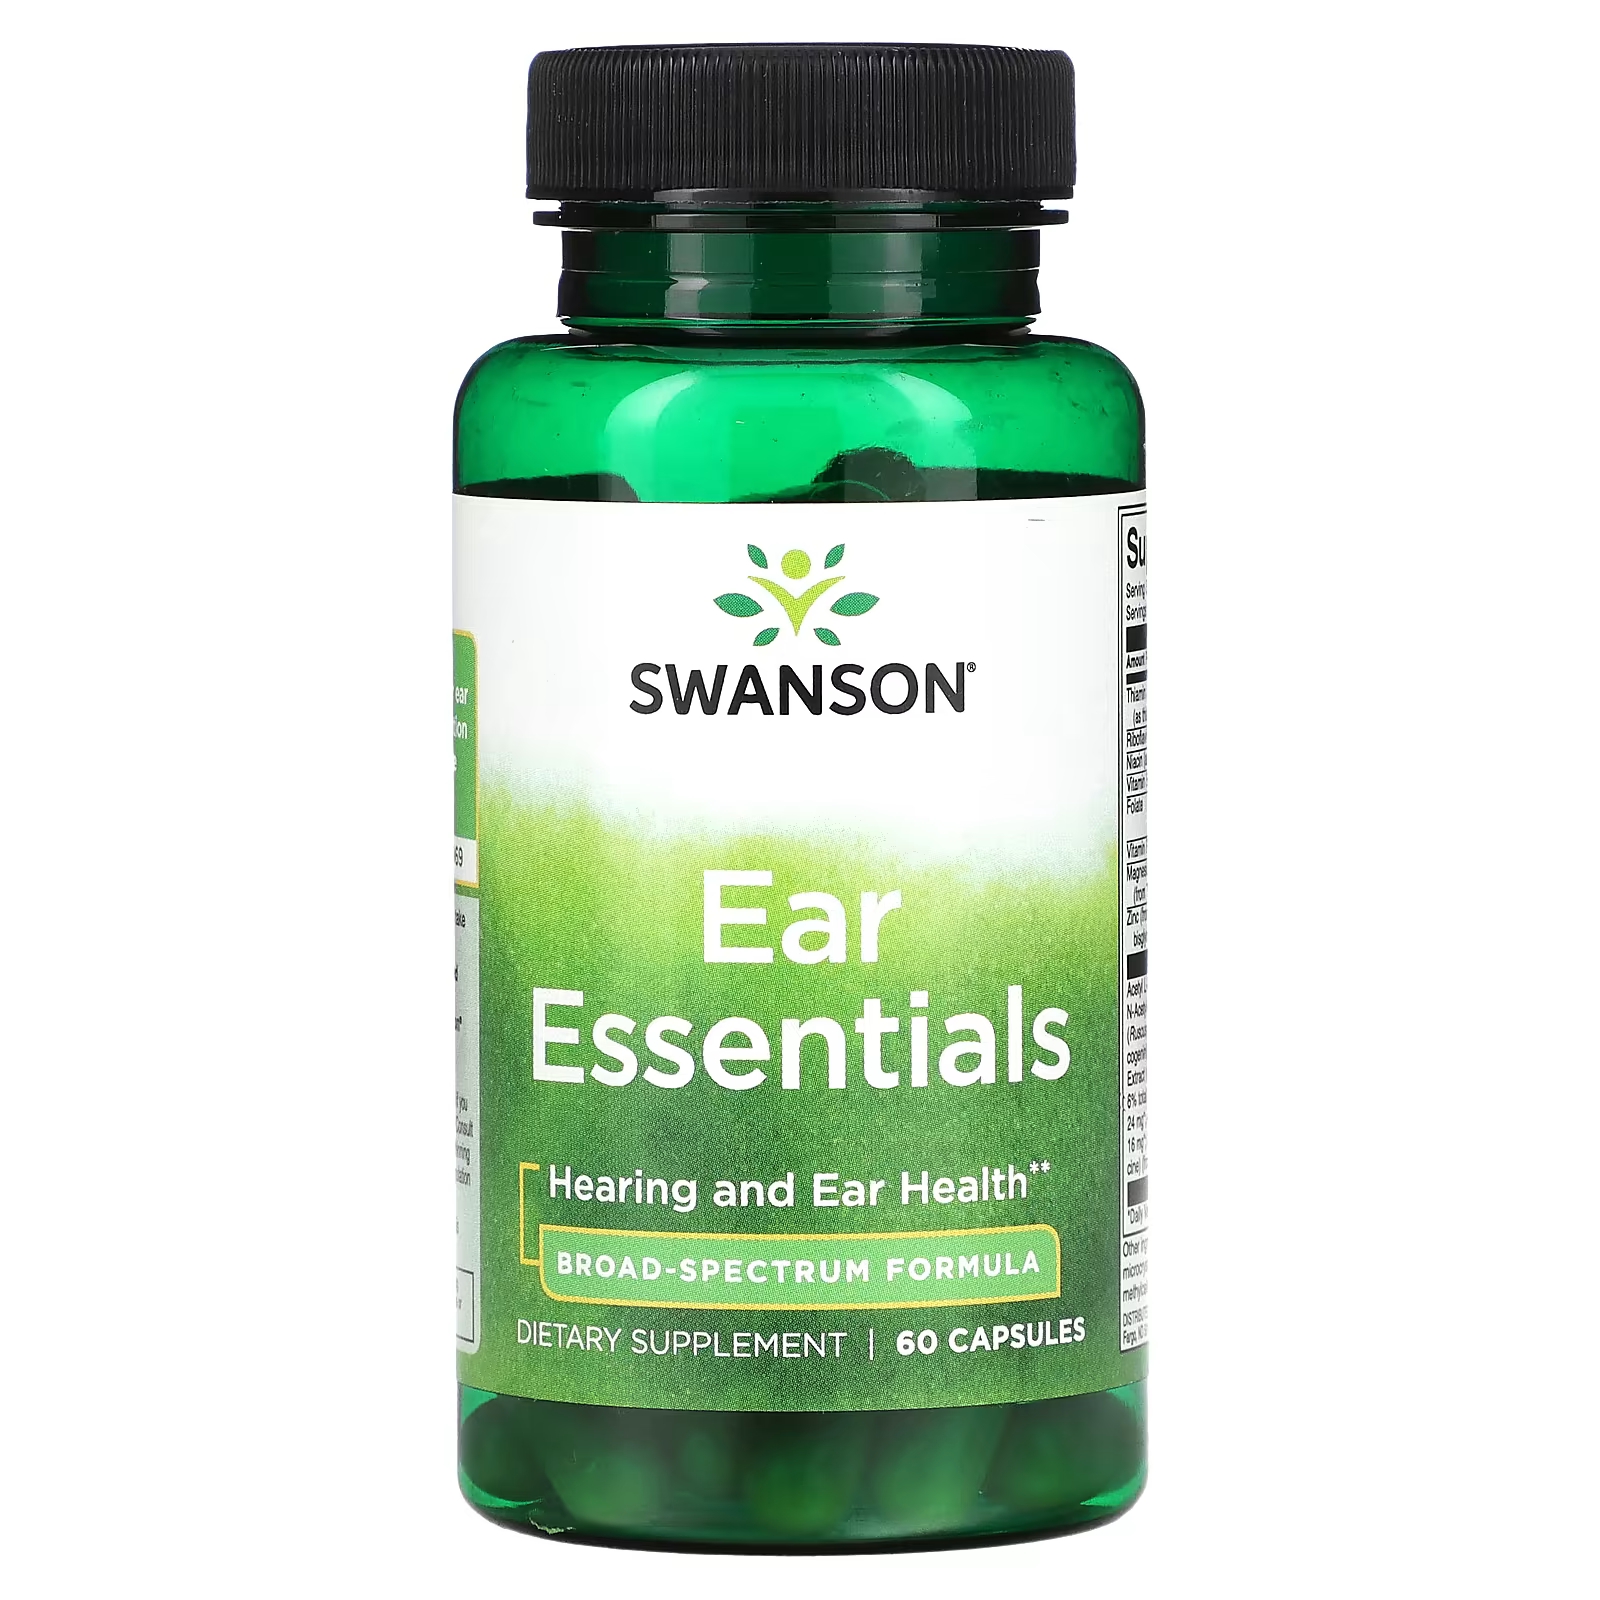 Пищевая добавка Swanson Ear Essentials, 60 капсул пищевая добавка swanson кератин 60 капсул